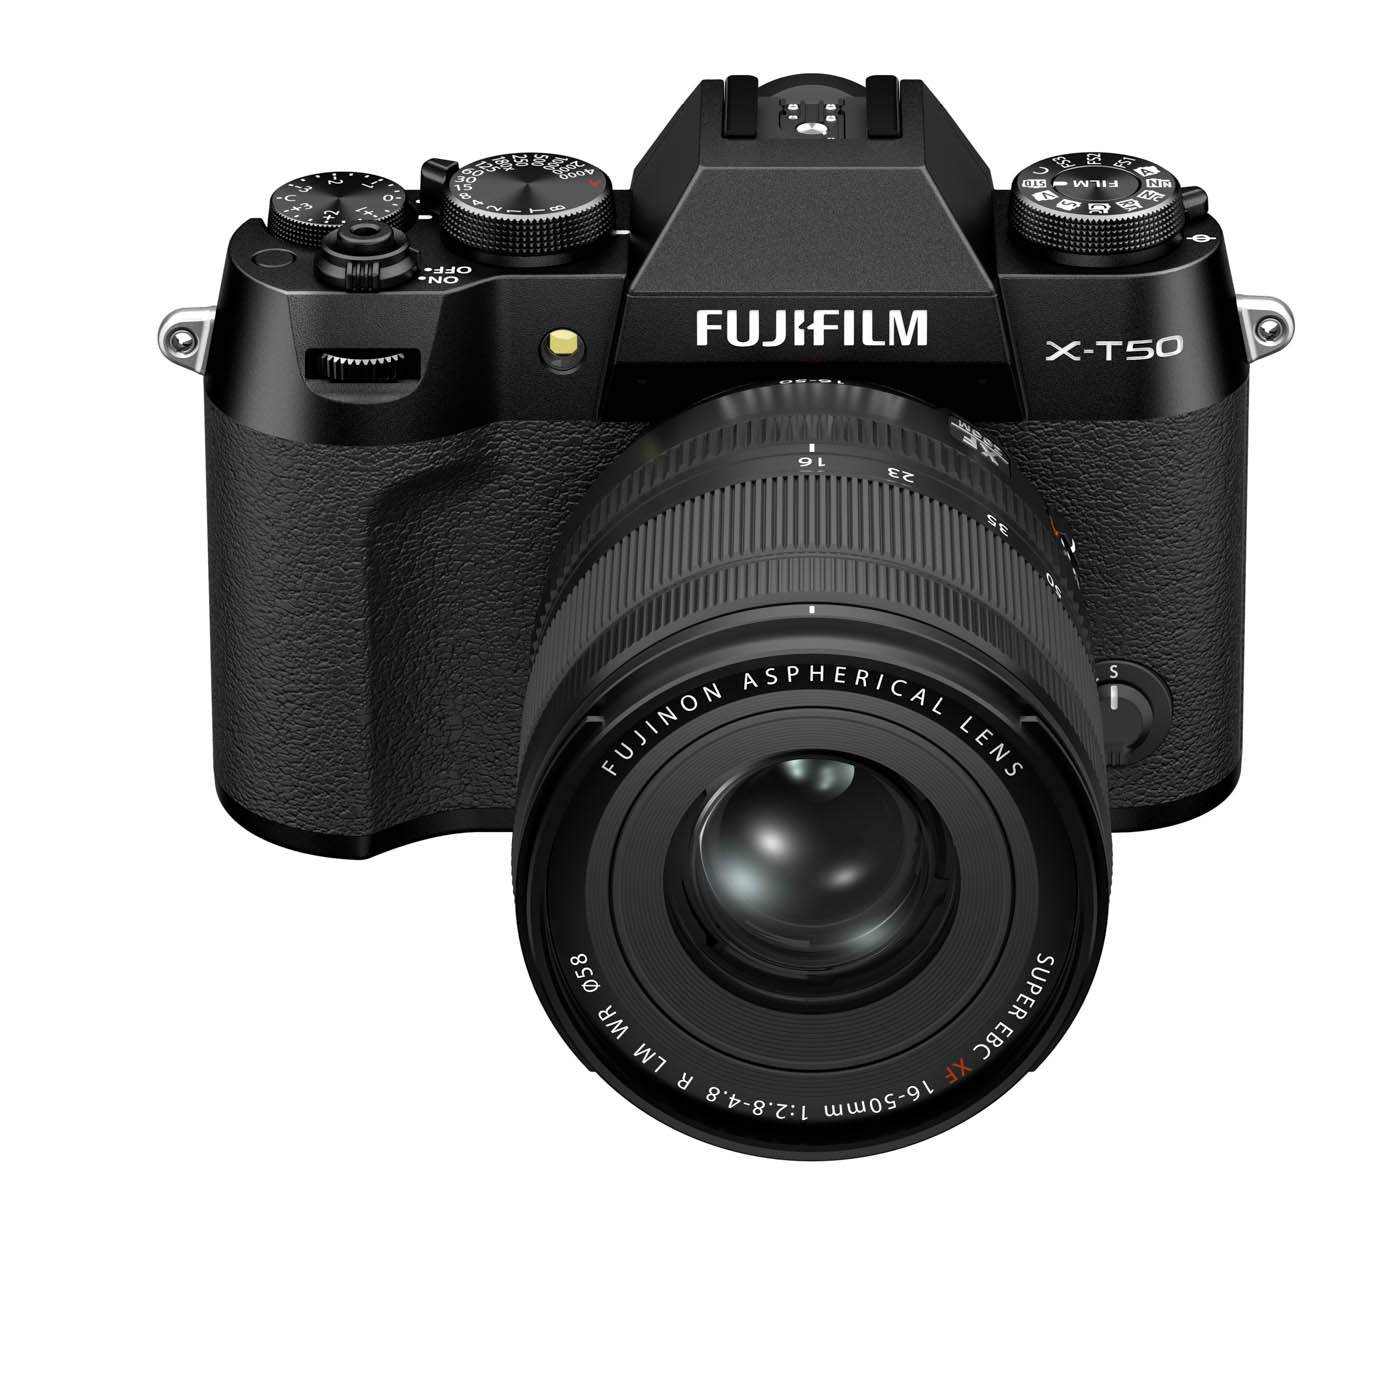 Fujifilm X-T50 Camera with XF 16-50mm F2.8-4.8 R LM WR Lens - Black